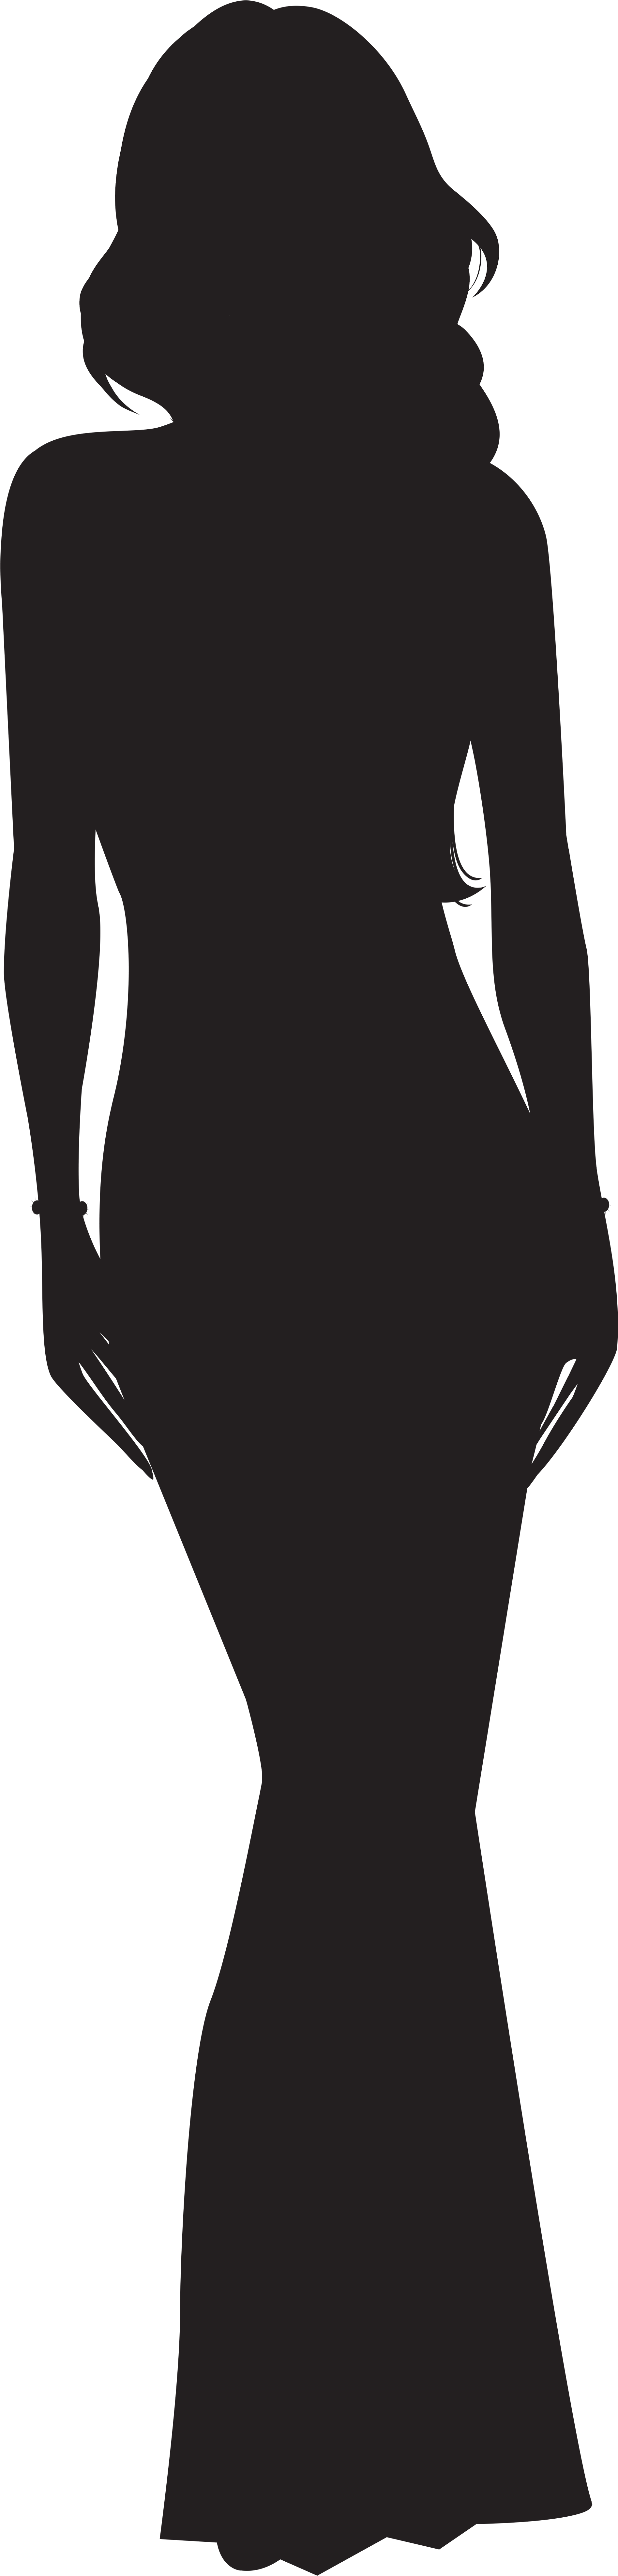 Woman Silhouette Clipart - Woman Silhouette Clip Art (2065x8000)